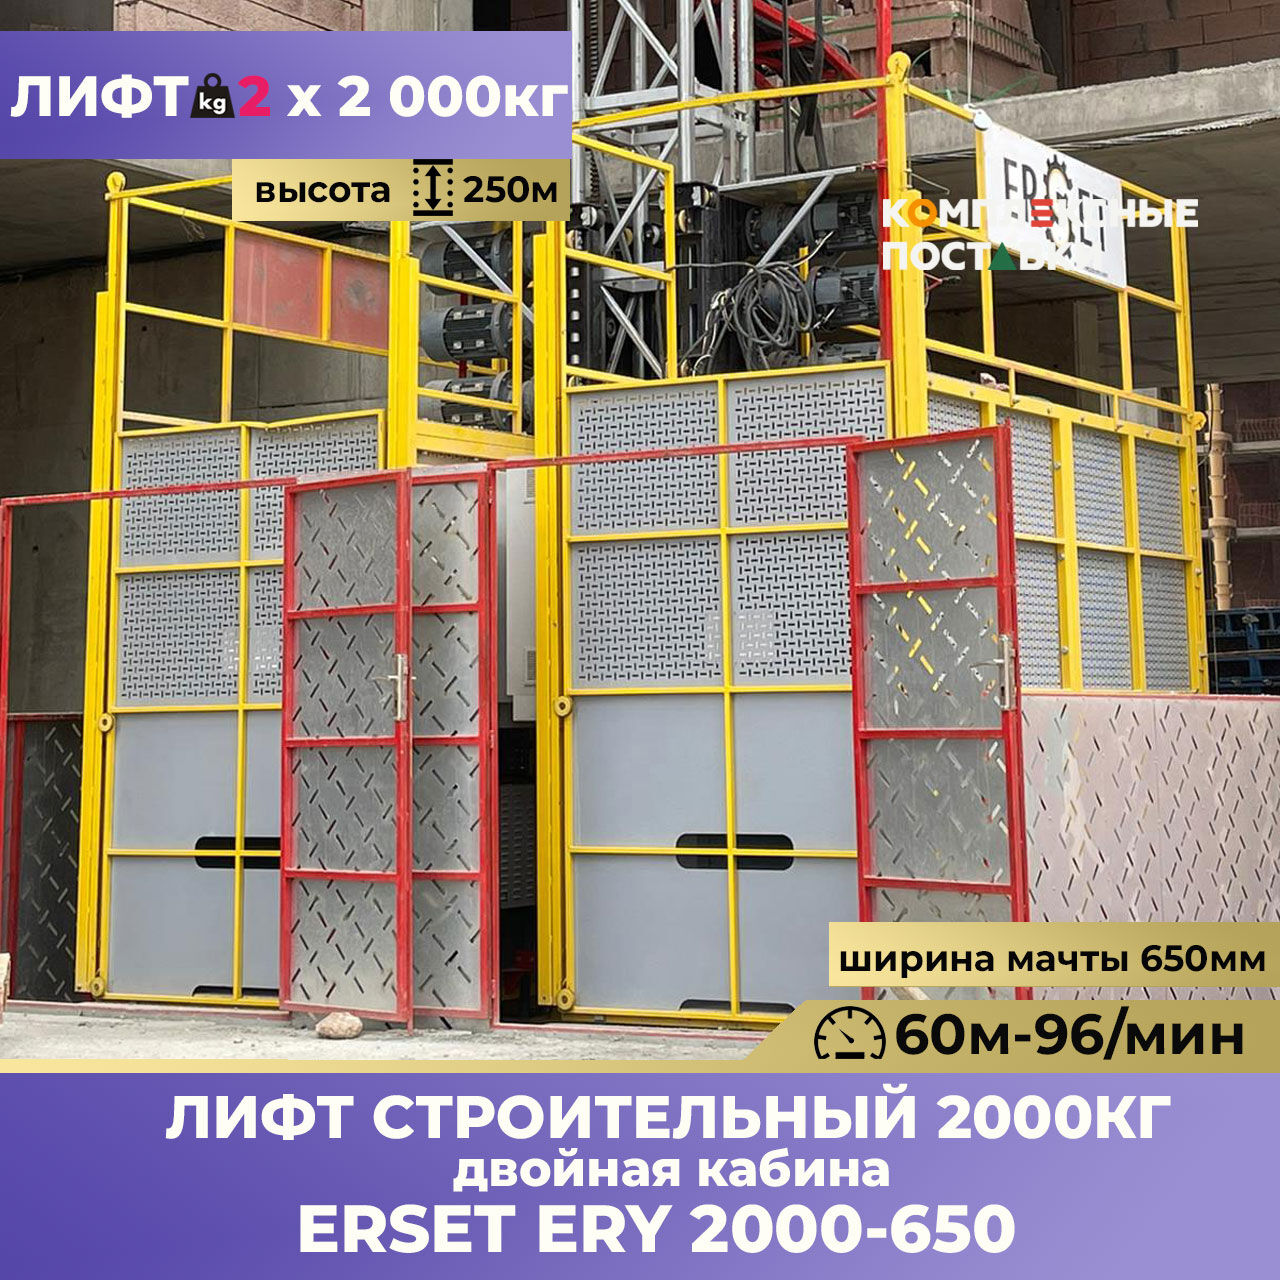 ERY 2000/650 Строительный лифт с двойной кабиной 2х2000 кг